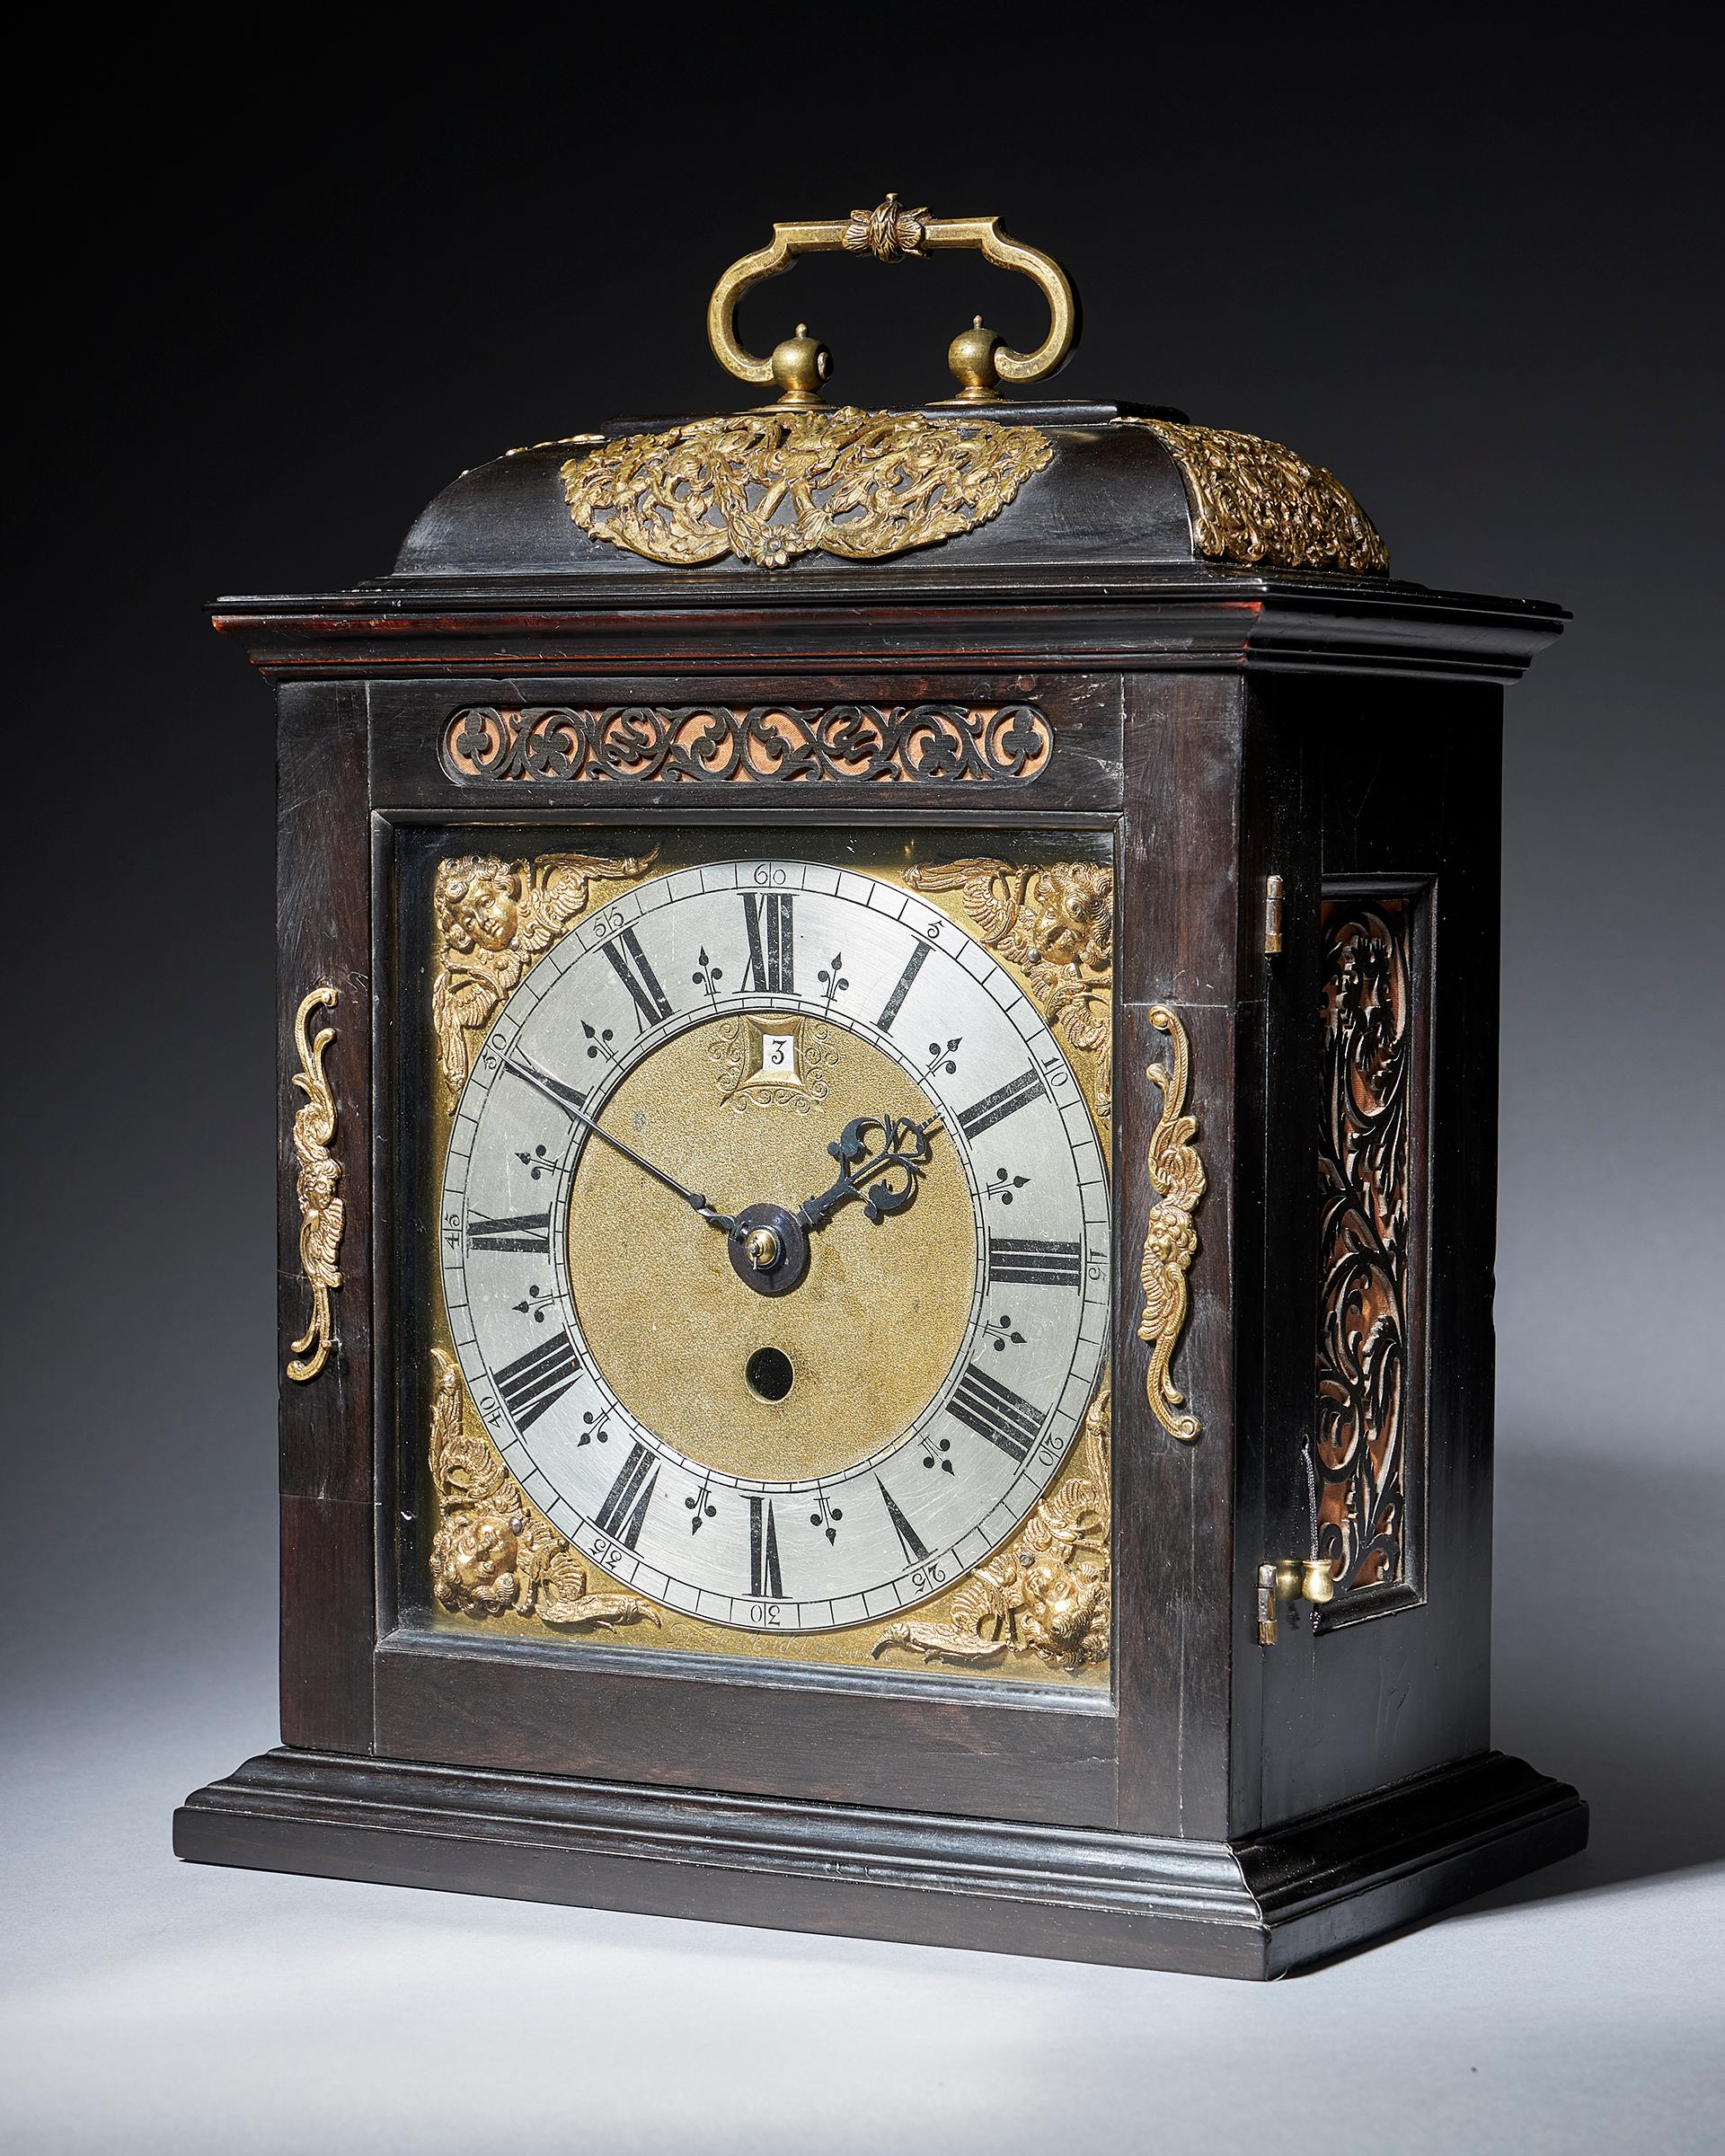 1600s clock